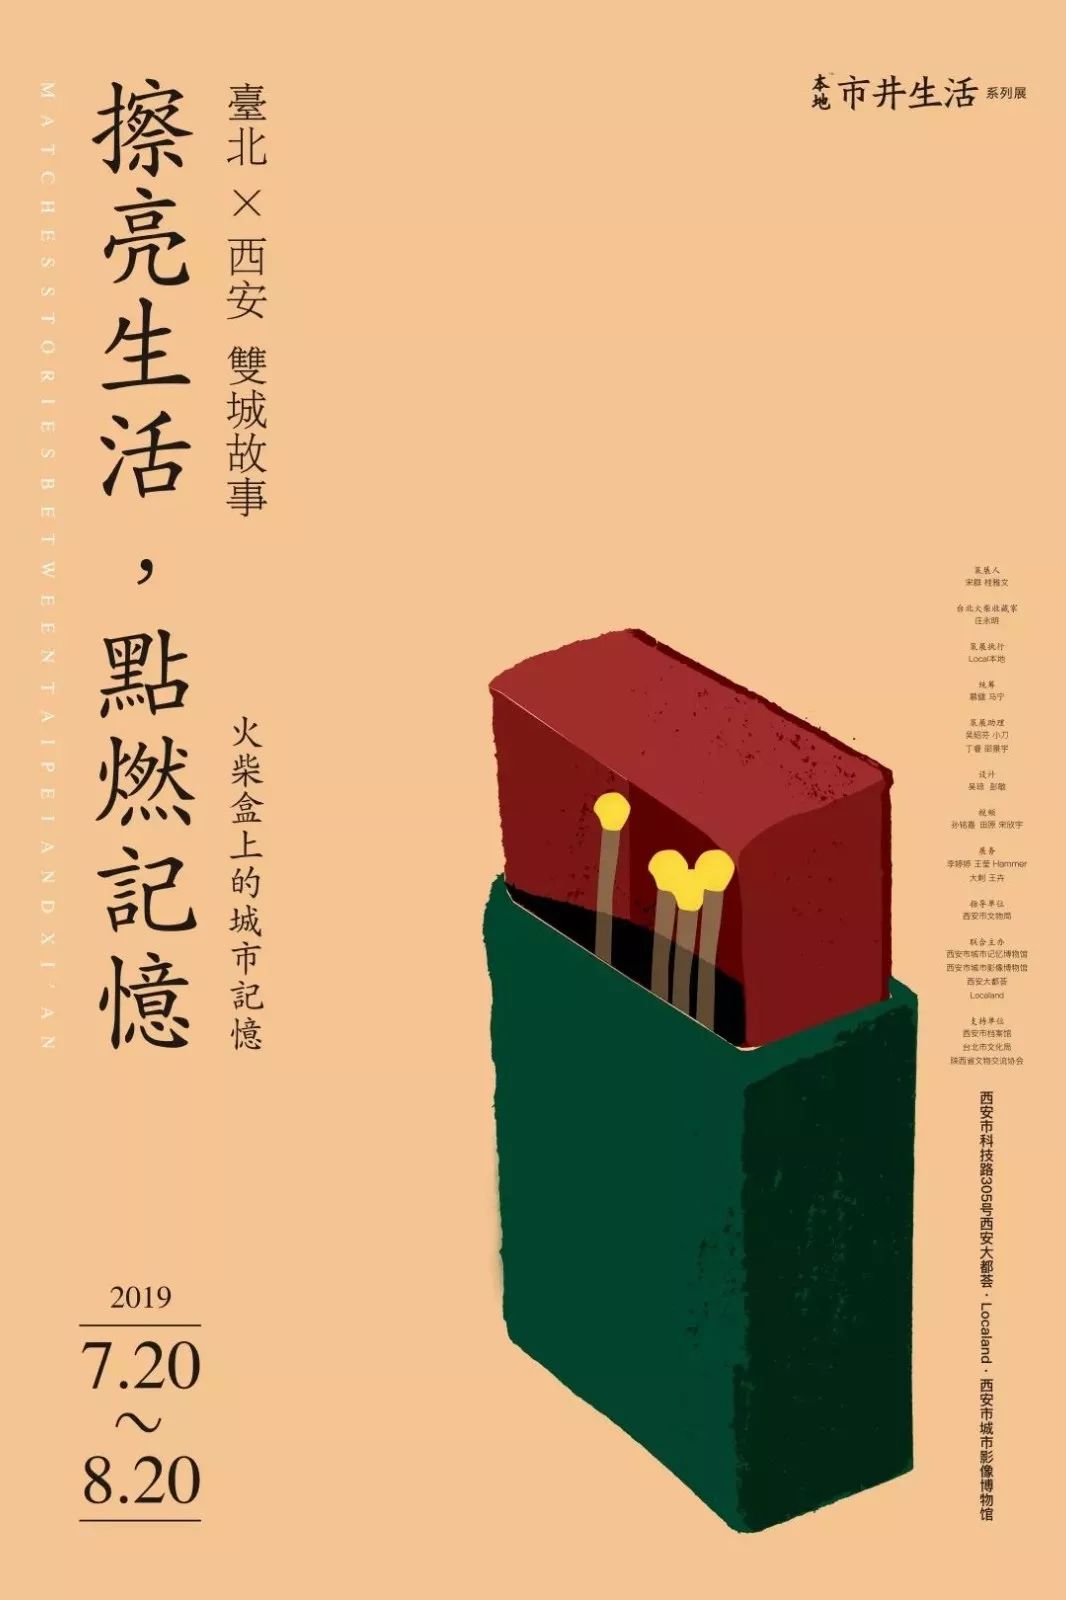 26张中文海报设计欣赏